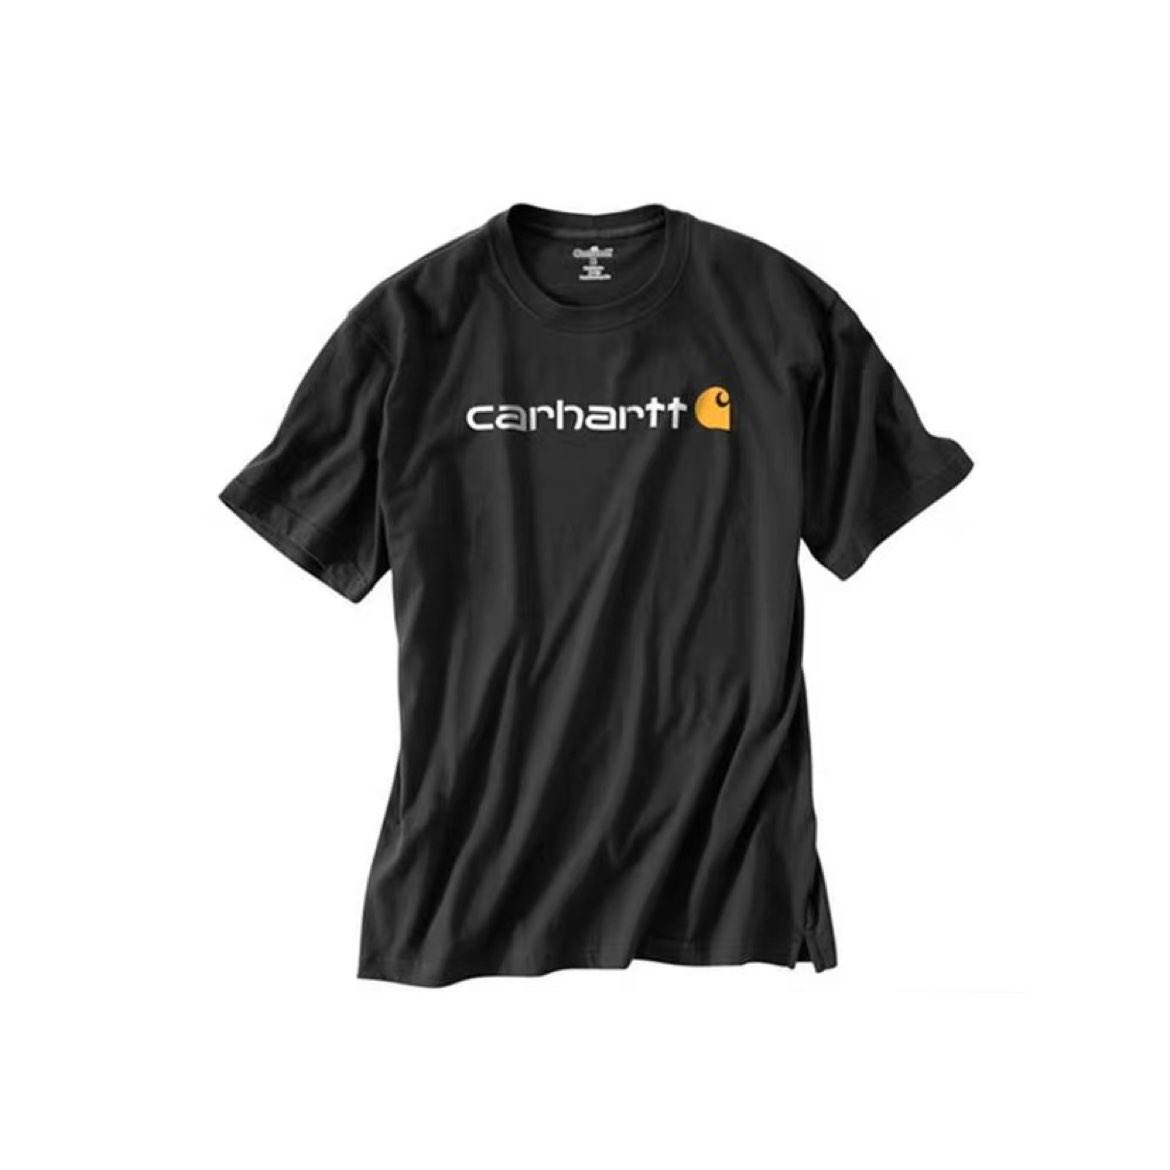 限尺码、88VIP：Carhartt 男士黑色字母短袖T恤 126.91元